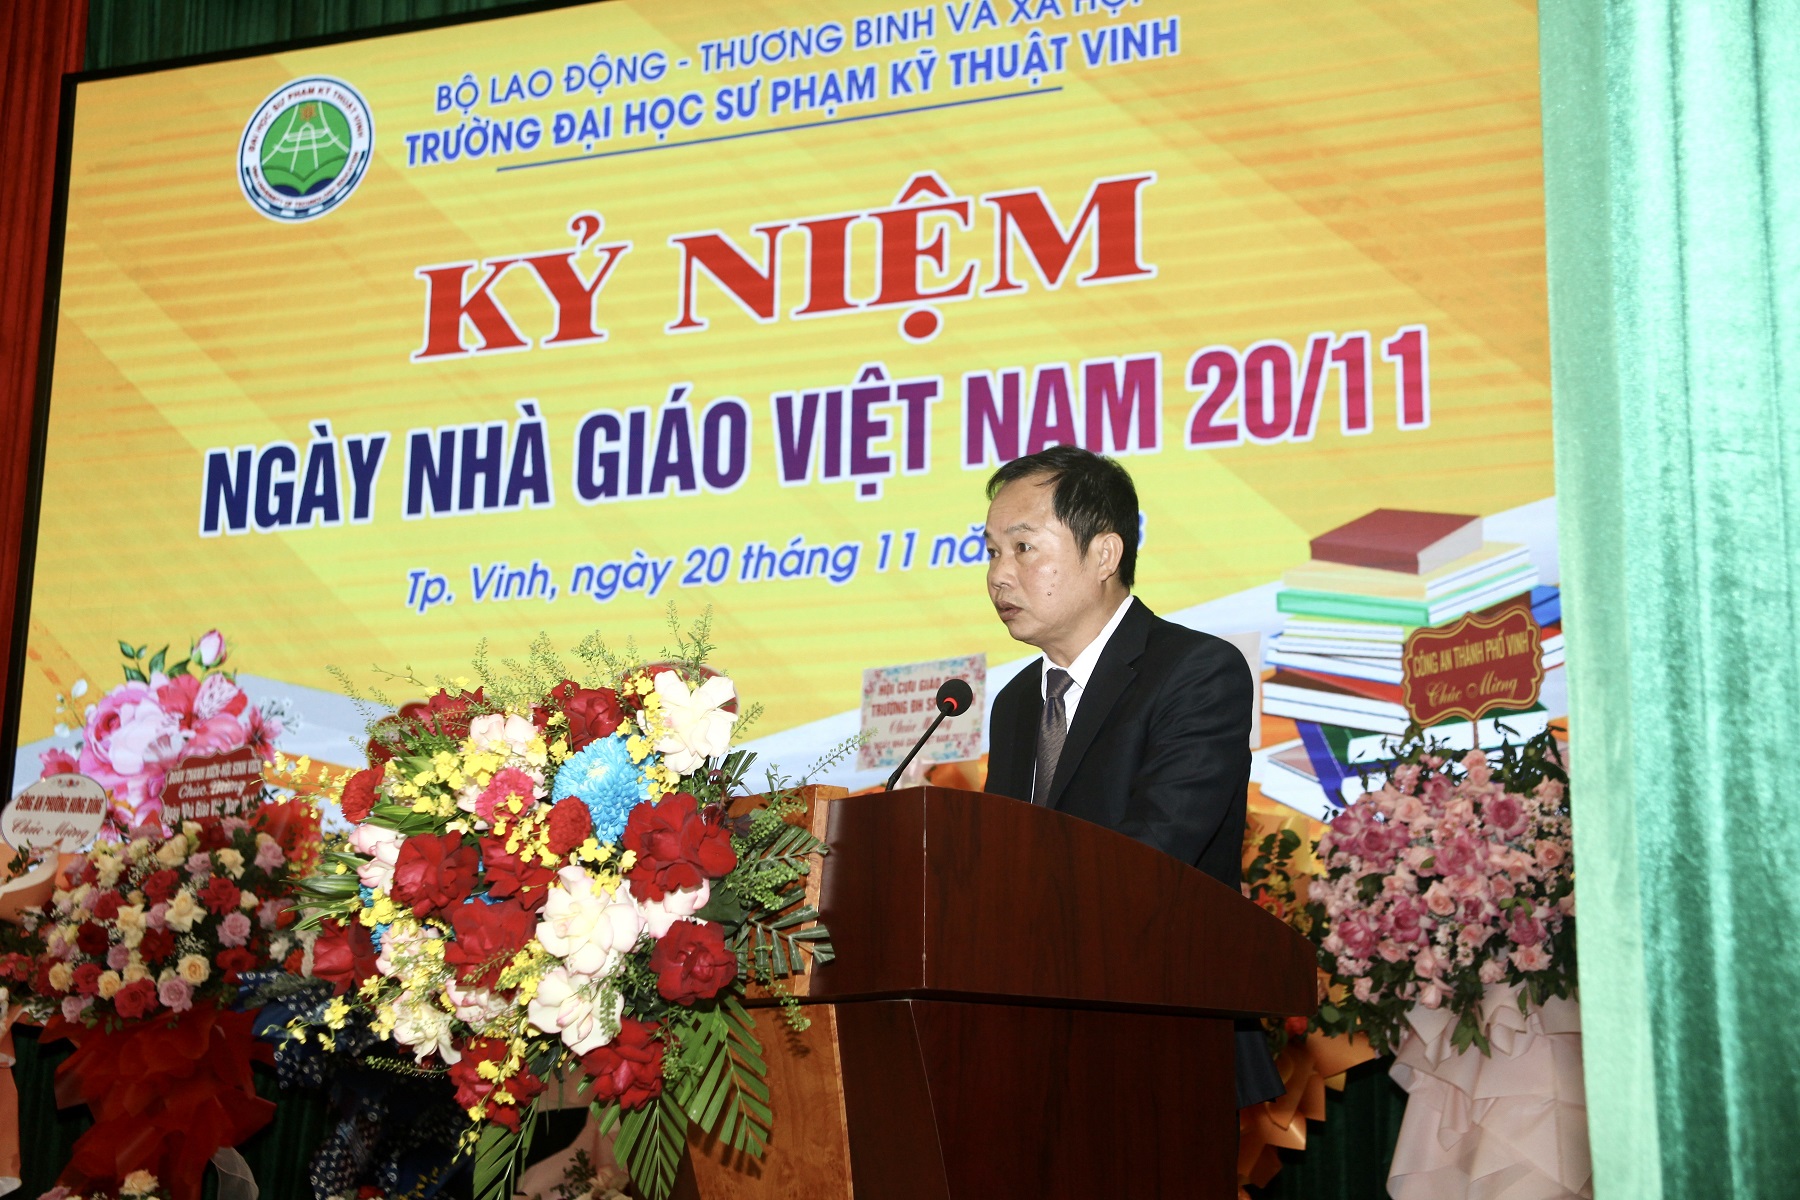 Trường Đại học Sư phạm Kỹ thuật vinh long trọng tổ chức   kỷ niệm 41 năm Ngày Nhà giáo Việt Nam 20/11.